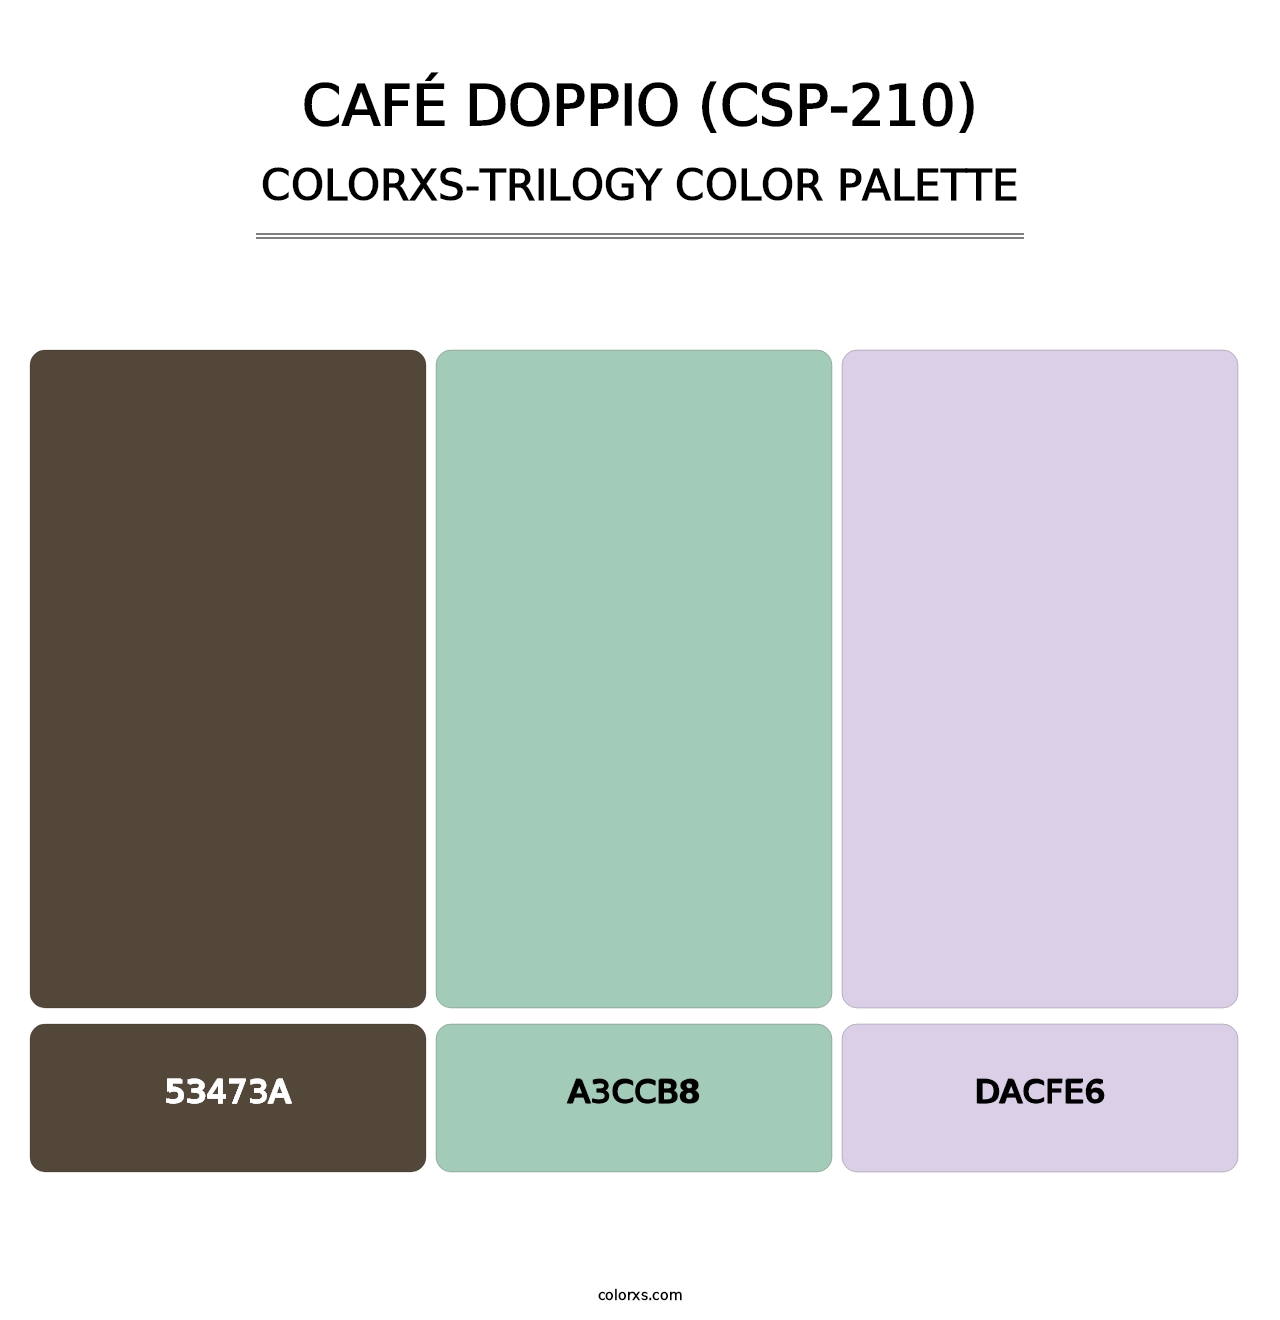 Café Doppio (CSP-210) - Colorxs Trilogy Palette